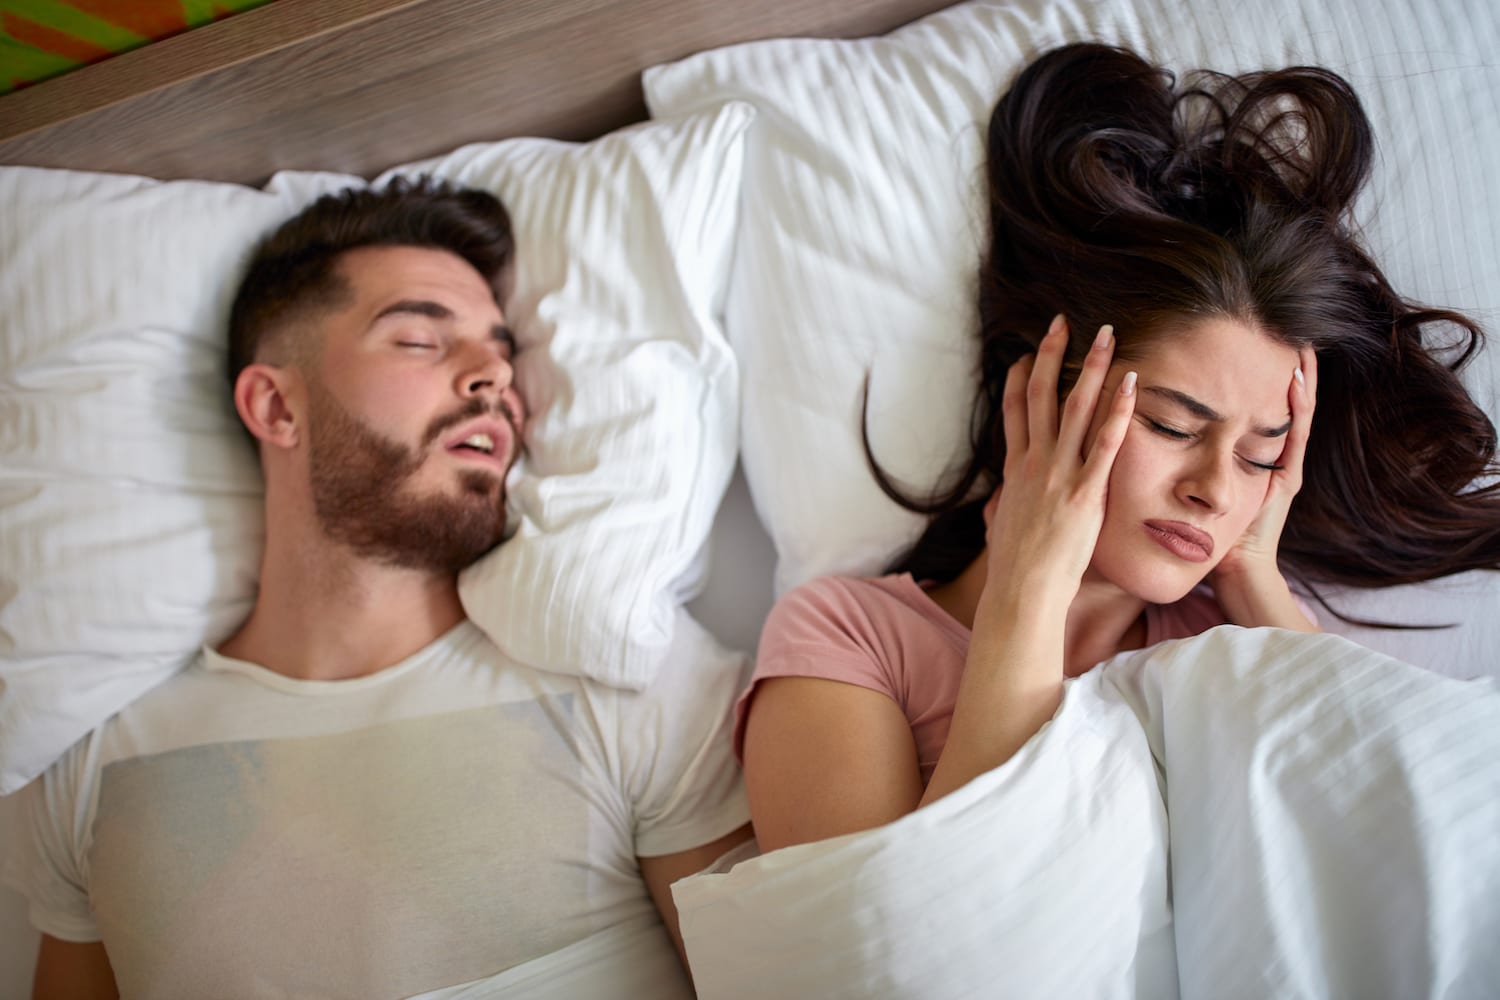 How to Stop Snoring: खर्राटों की समस्या से रहते हैं परेशान तो ये घरेलू उपाय आपके आ सकते हैं काम